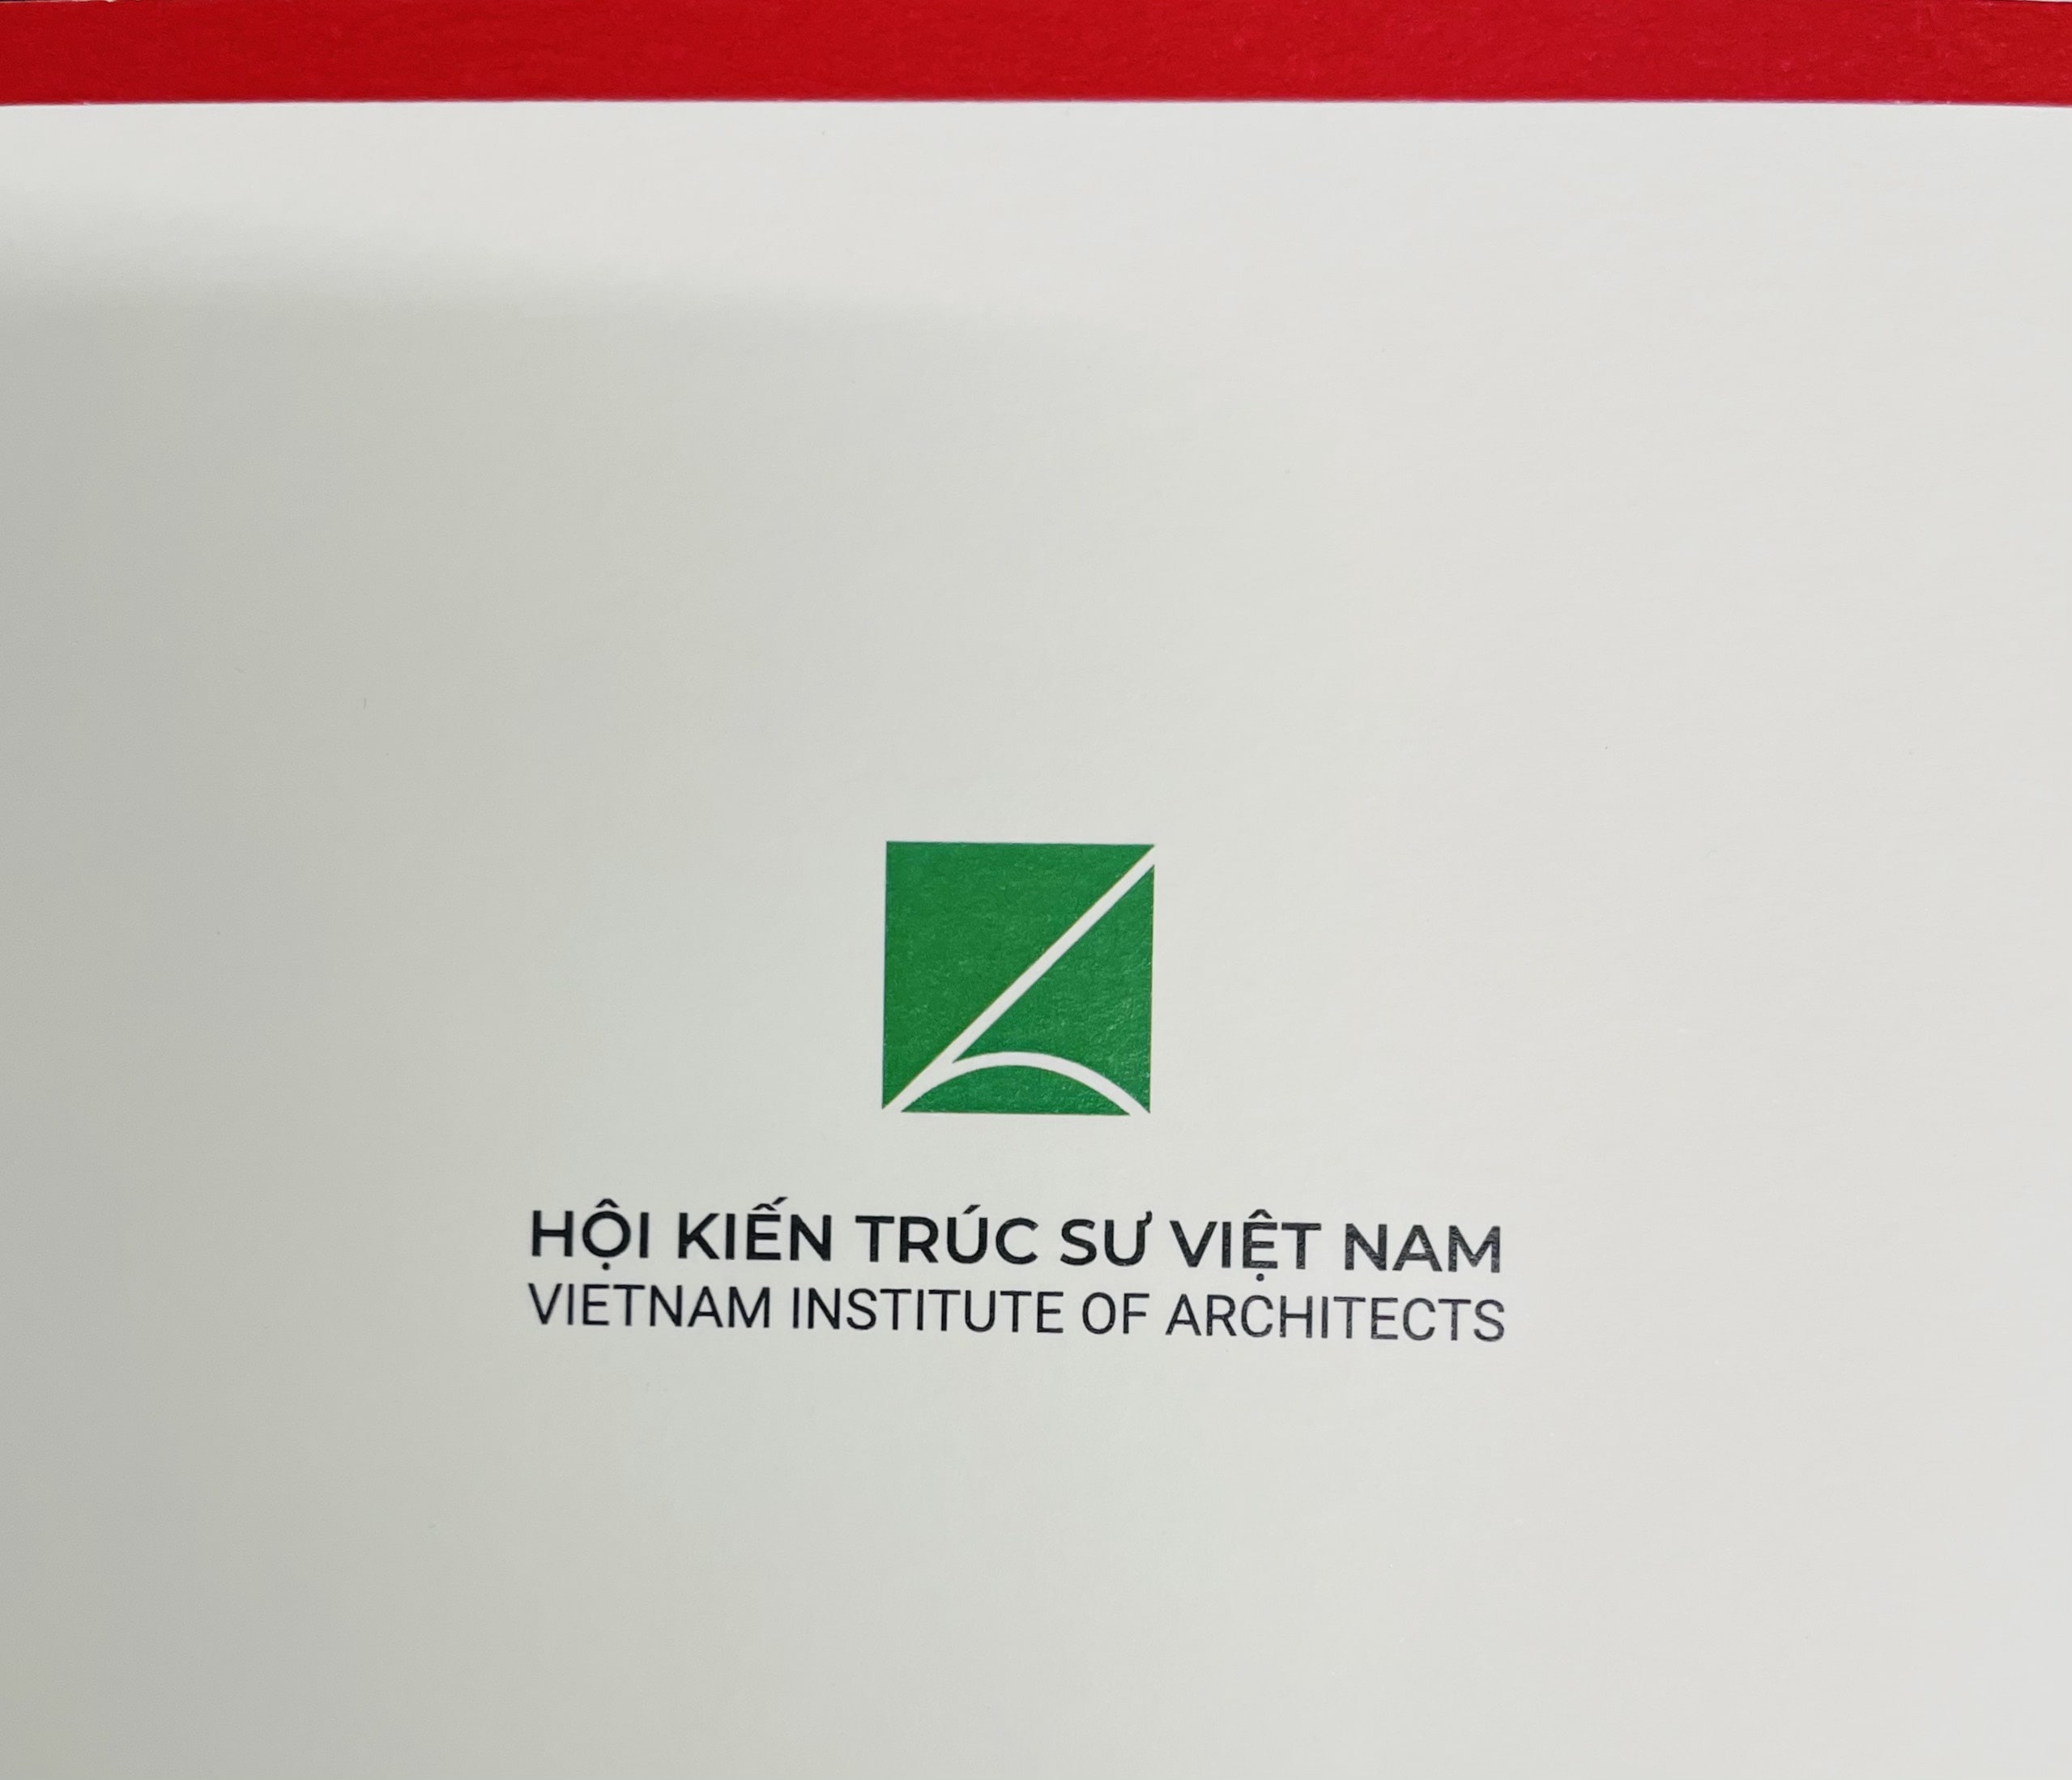 Khoa Kiến trúc Mỹ thuật nhận Thiệp chúc tết từ HỘI KIẾN TRÚC SƯ VIỆT NAM 2